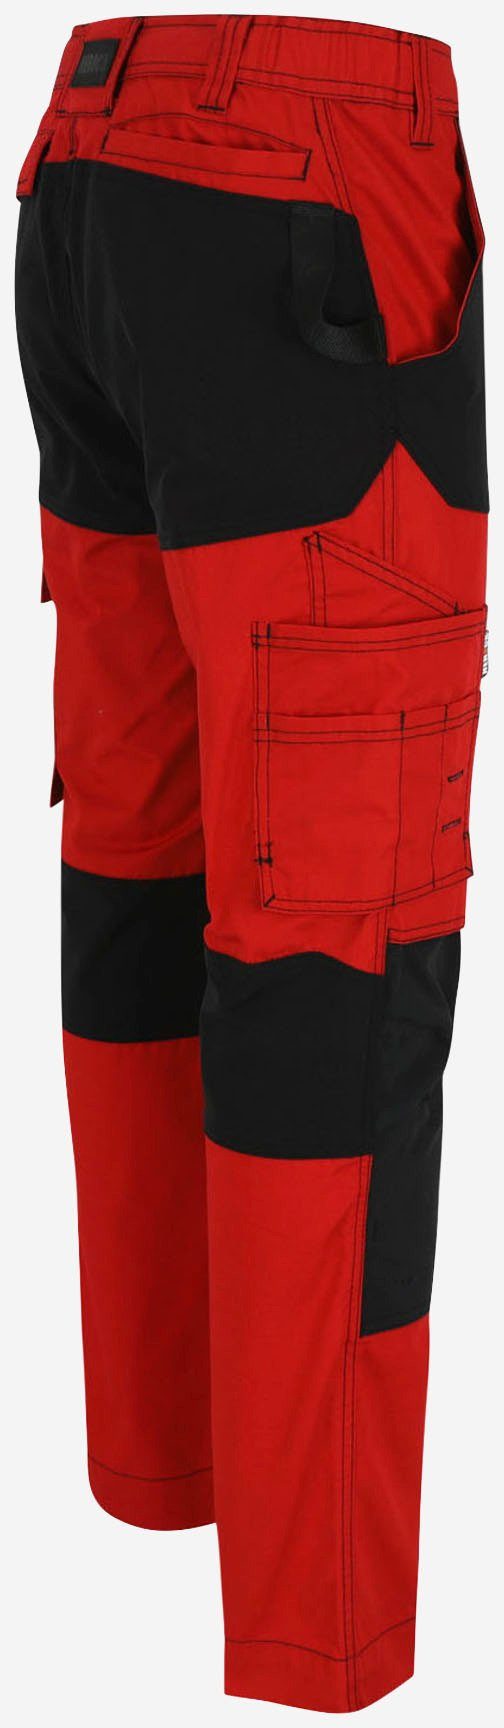 Herock Arbeitshose Hector Hoses Knietaschen Multi-Pocket, rot/schwarz 4-Wege-Stretch, verstärkte Knopf, verdeckter